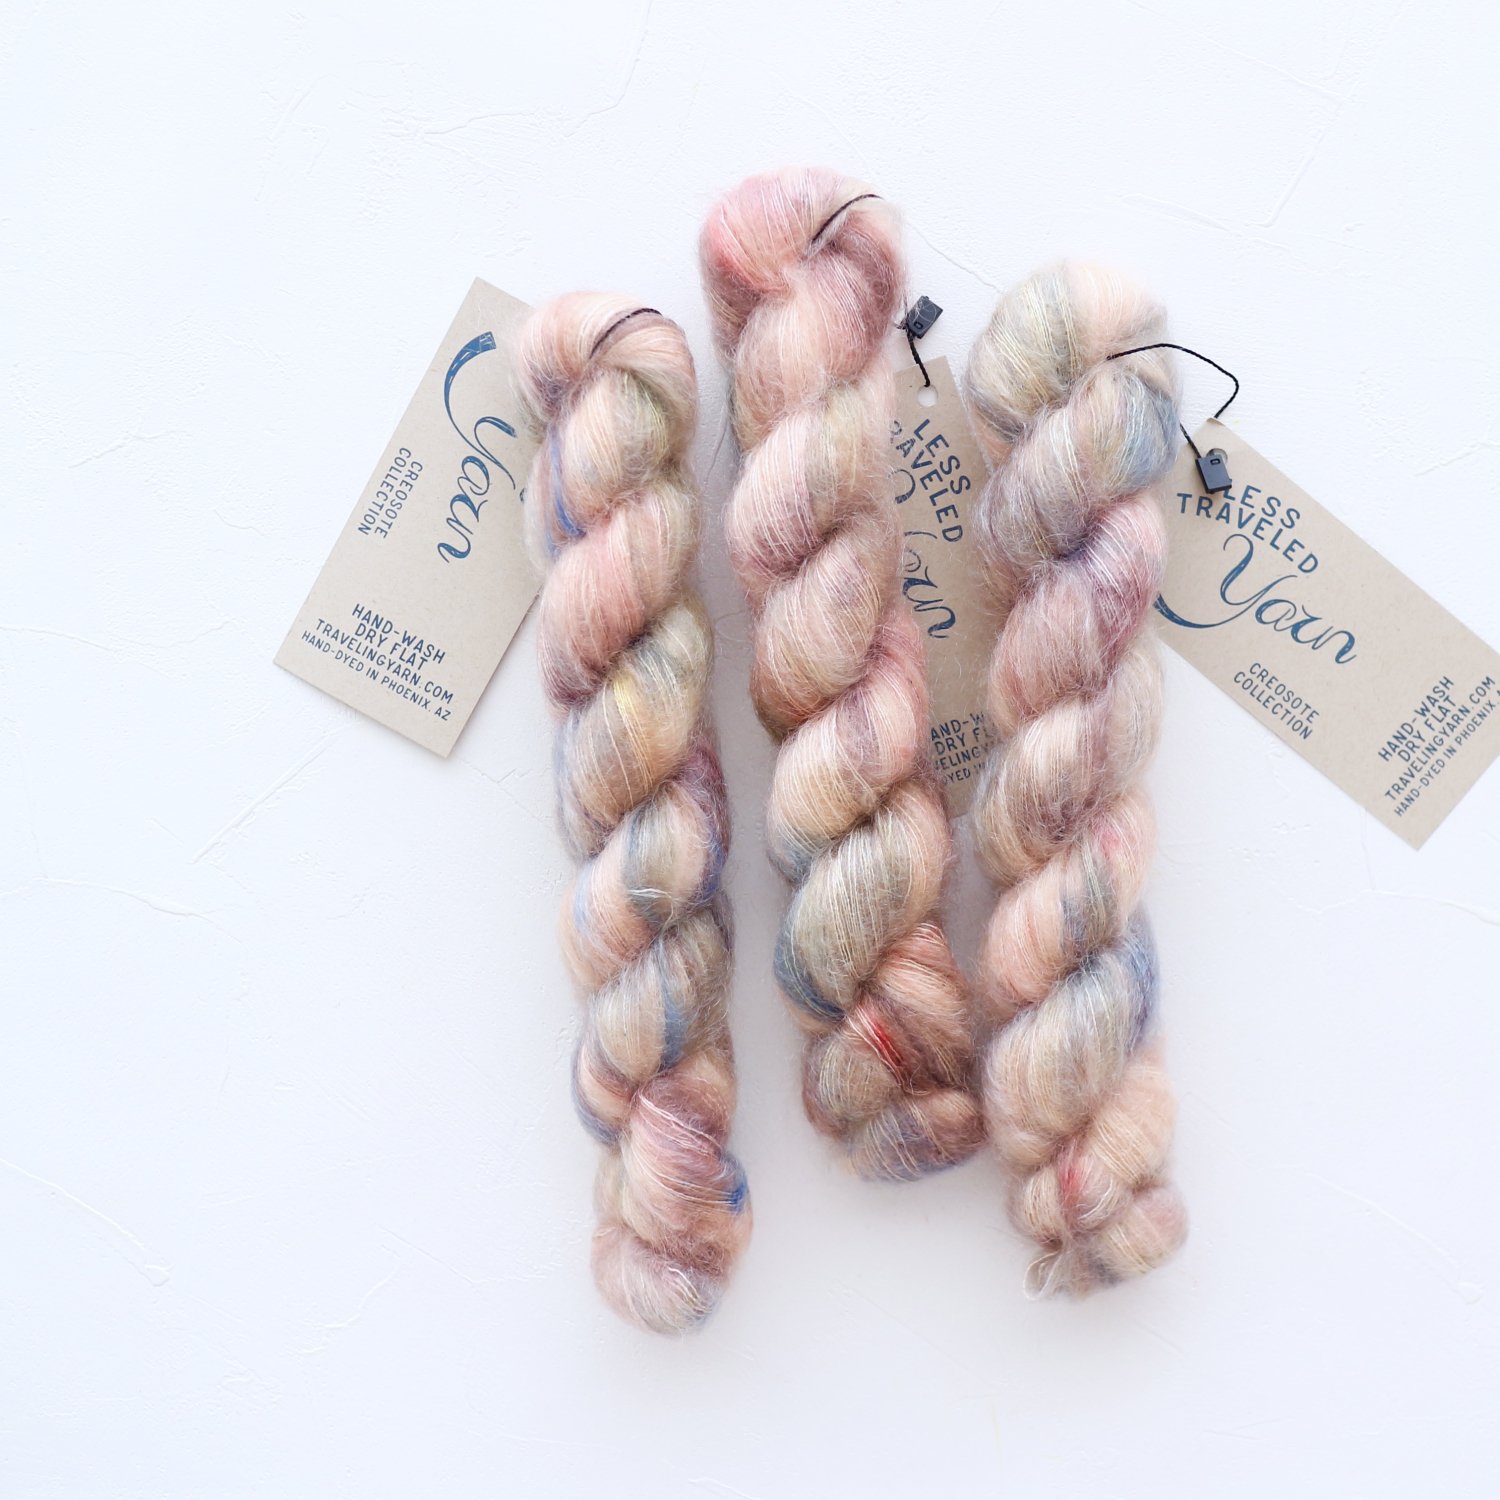 6425円 超格安価格 Coats Yarn ANNE GEDDES Baby 毛糸 並太 グリーン系 100g 約310m